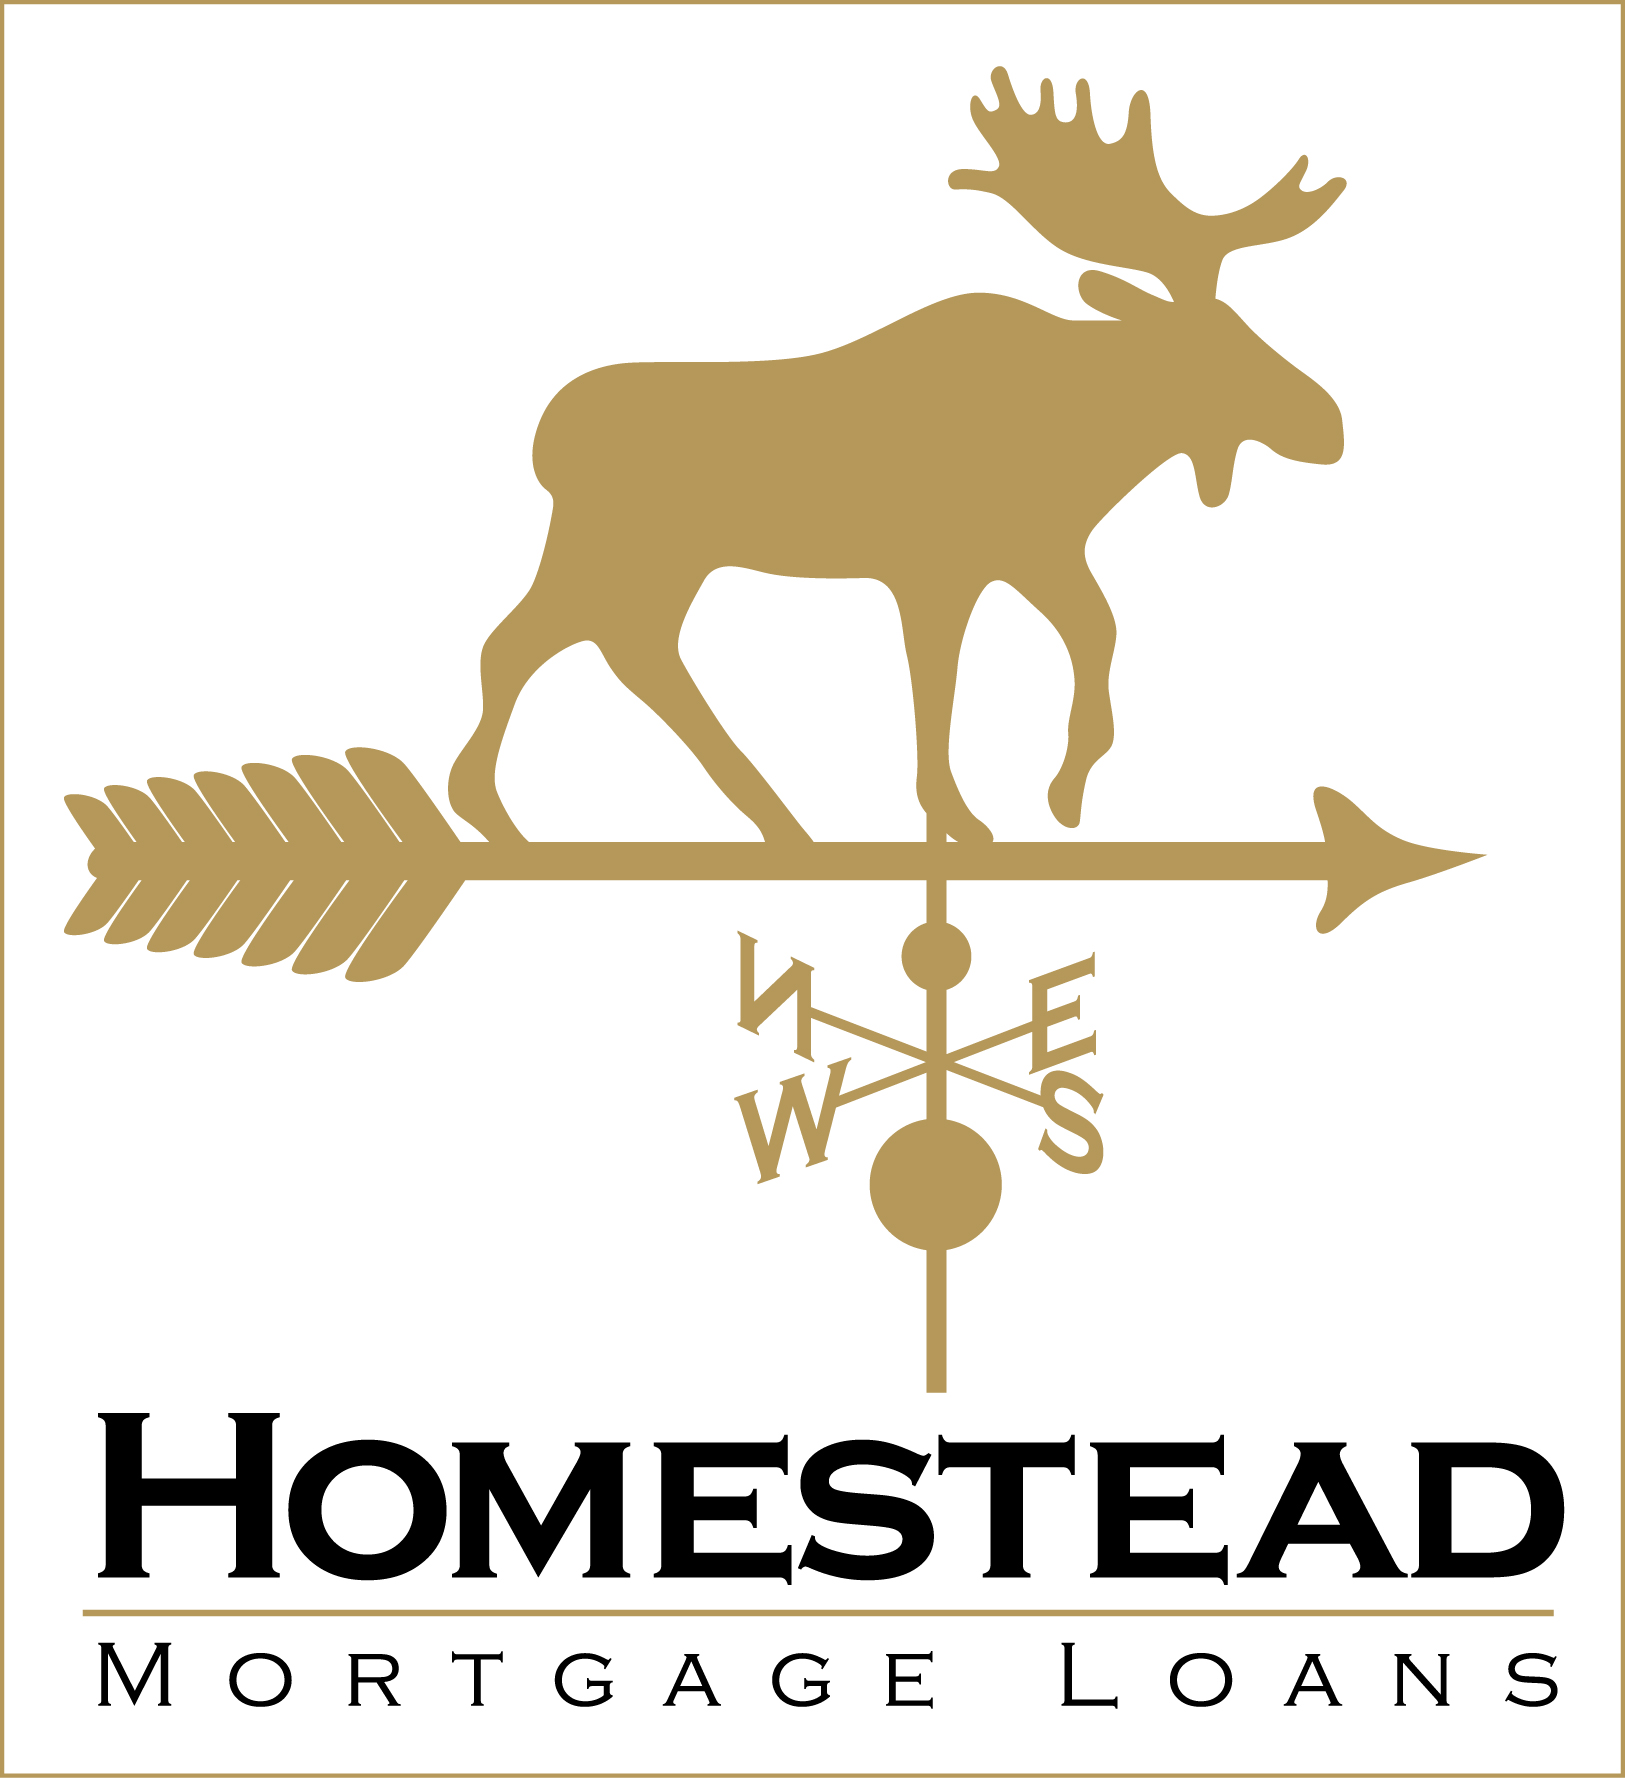 Homestead Mortgage Loans, Inc. - Sebago Lakes Chamber of Commerce ...